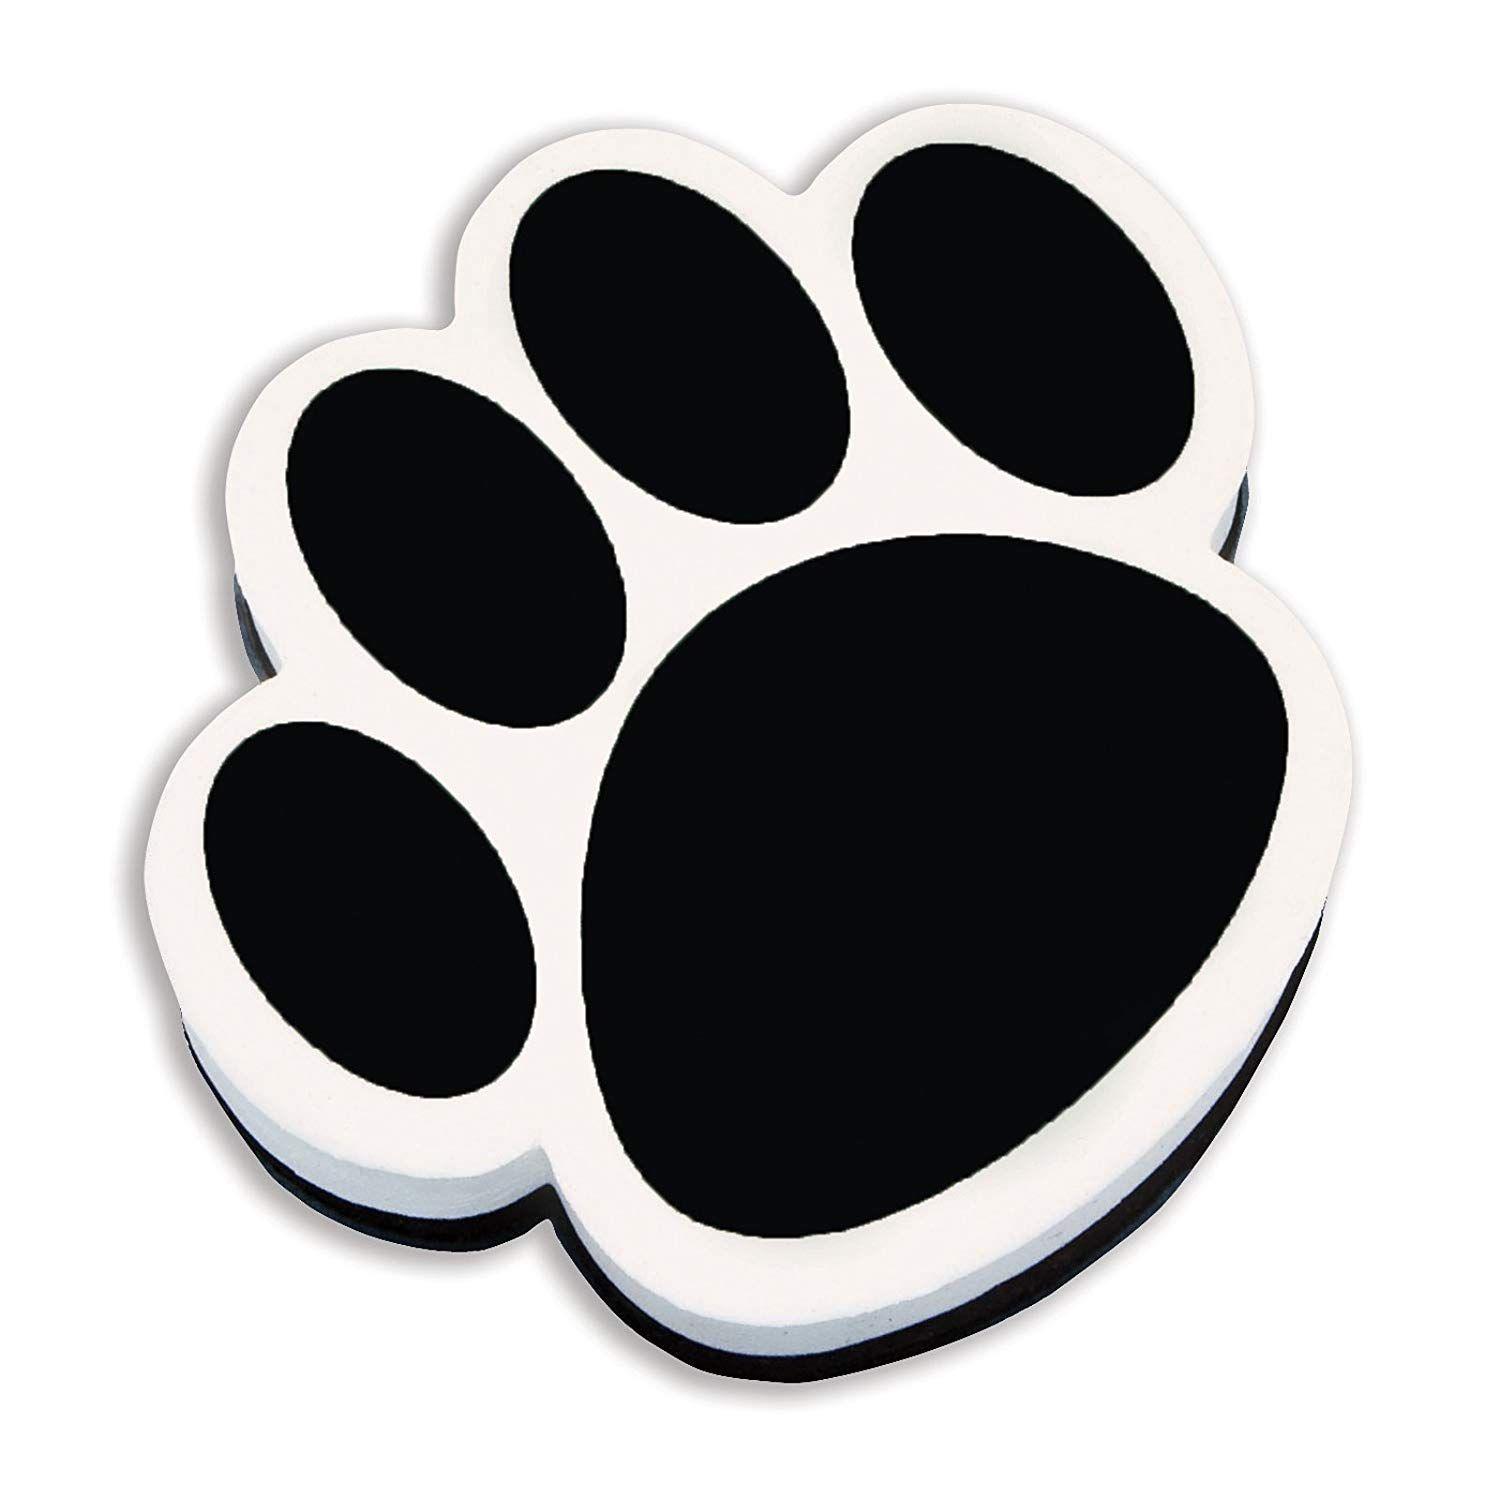 Black Paw Logo - Amazon.com: Ashley Productions Paw Magnetic Whiteboard Eraser, Black ...